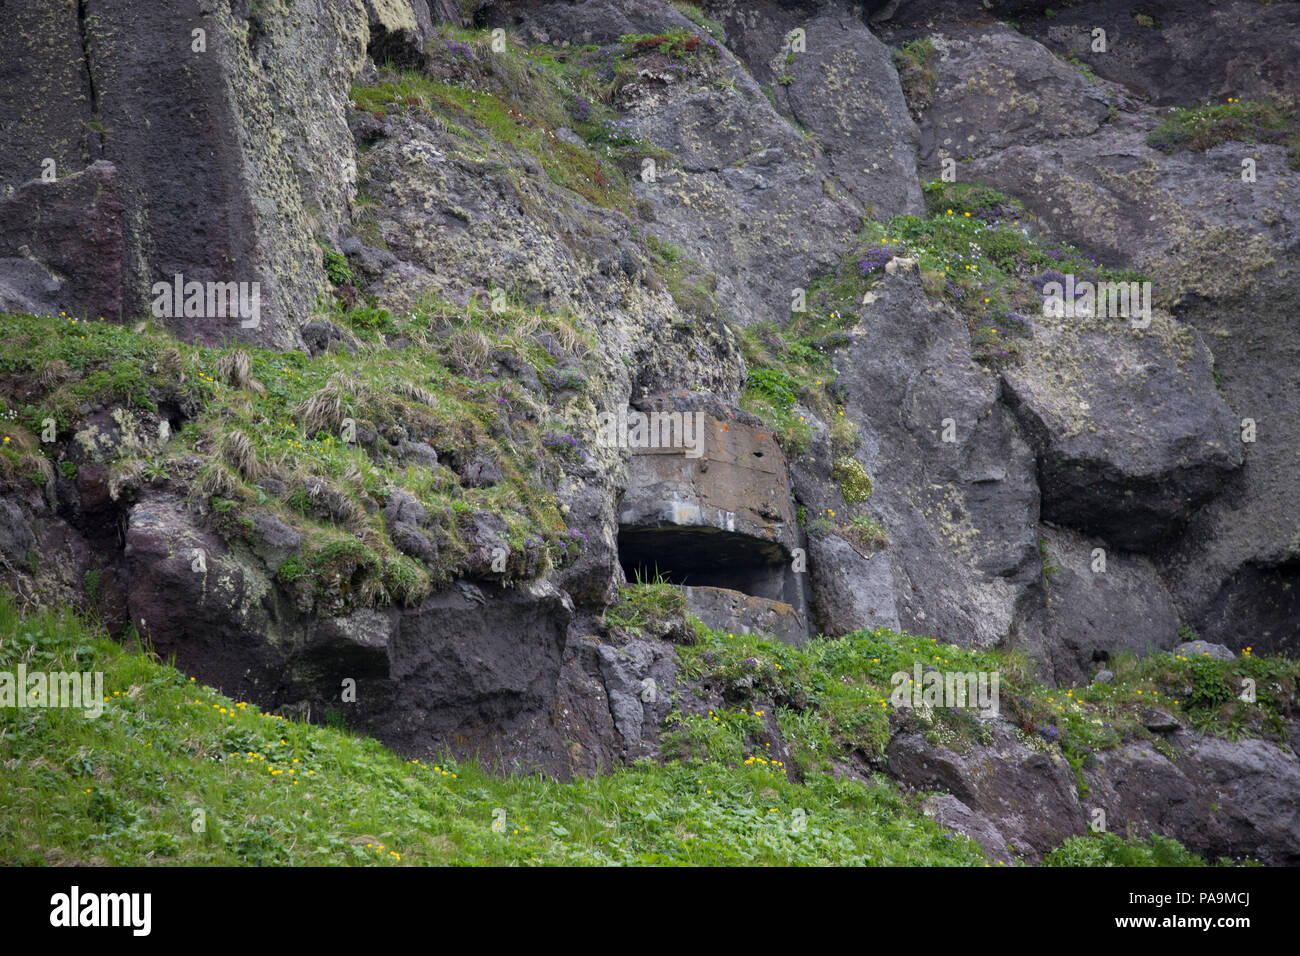 Los túneles de guerra y arma el cuartel en la isla Onekotan, las islas Kuriles Foto de stock